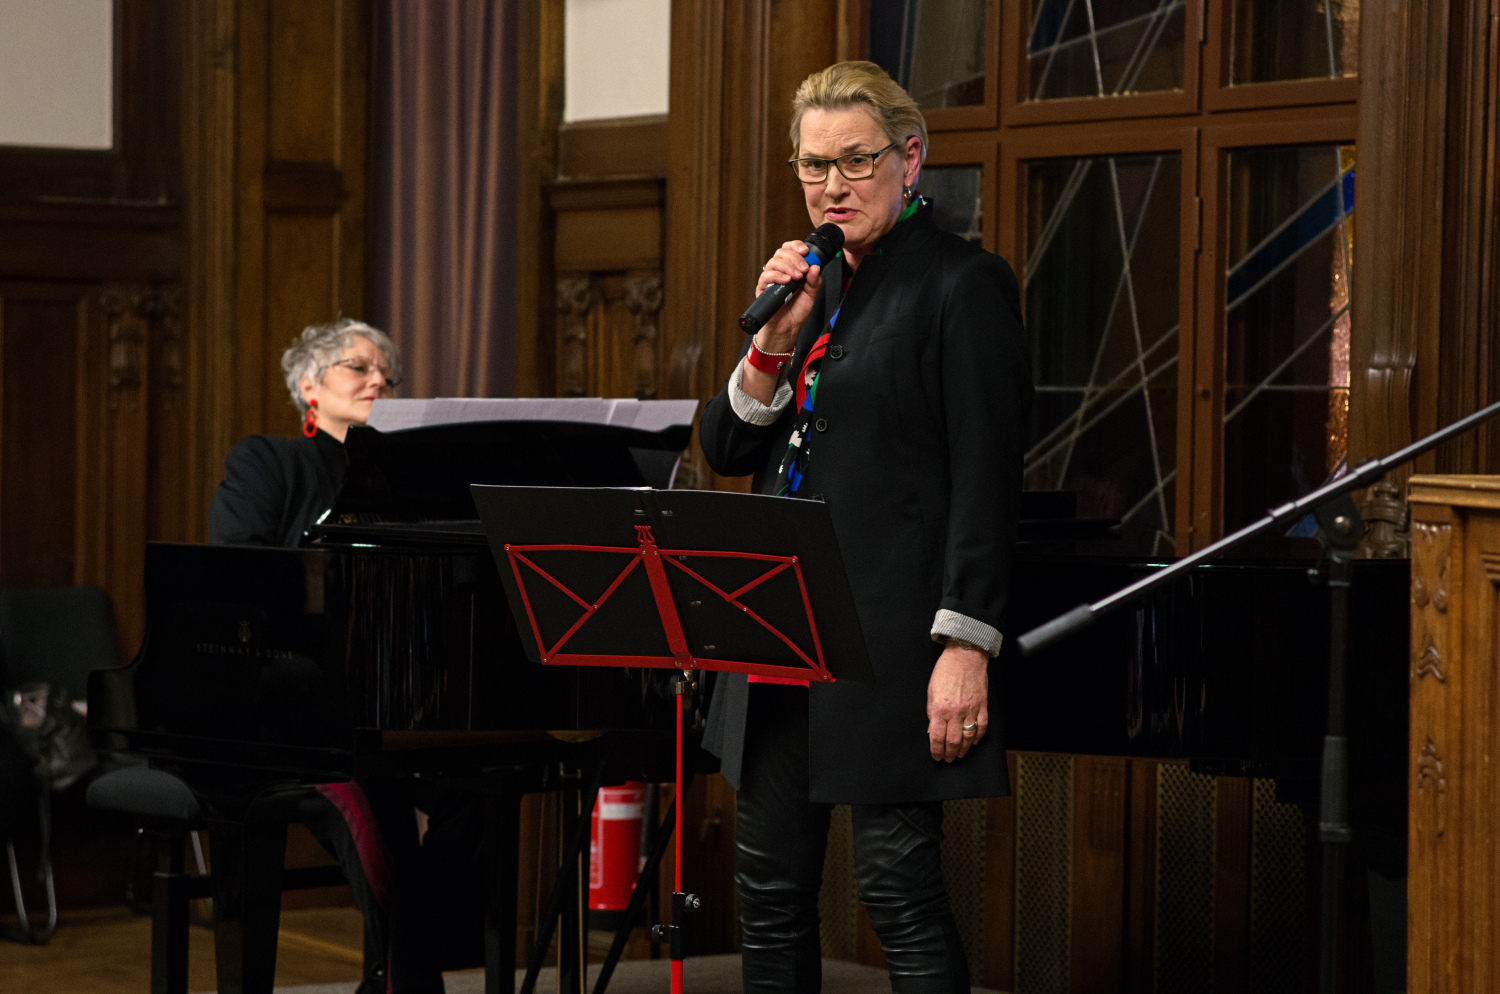 Musikalisches Begleitprogramm der Preisverleihung 2020 durch Dr. Gerlinde Kempendorff-Hoene mit Pianistin